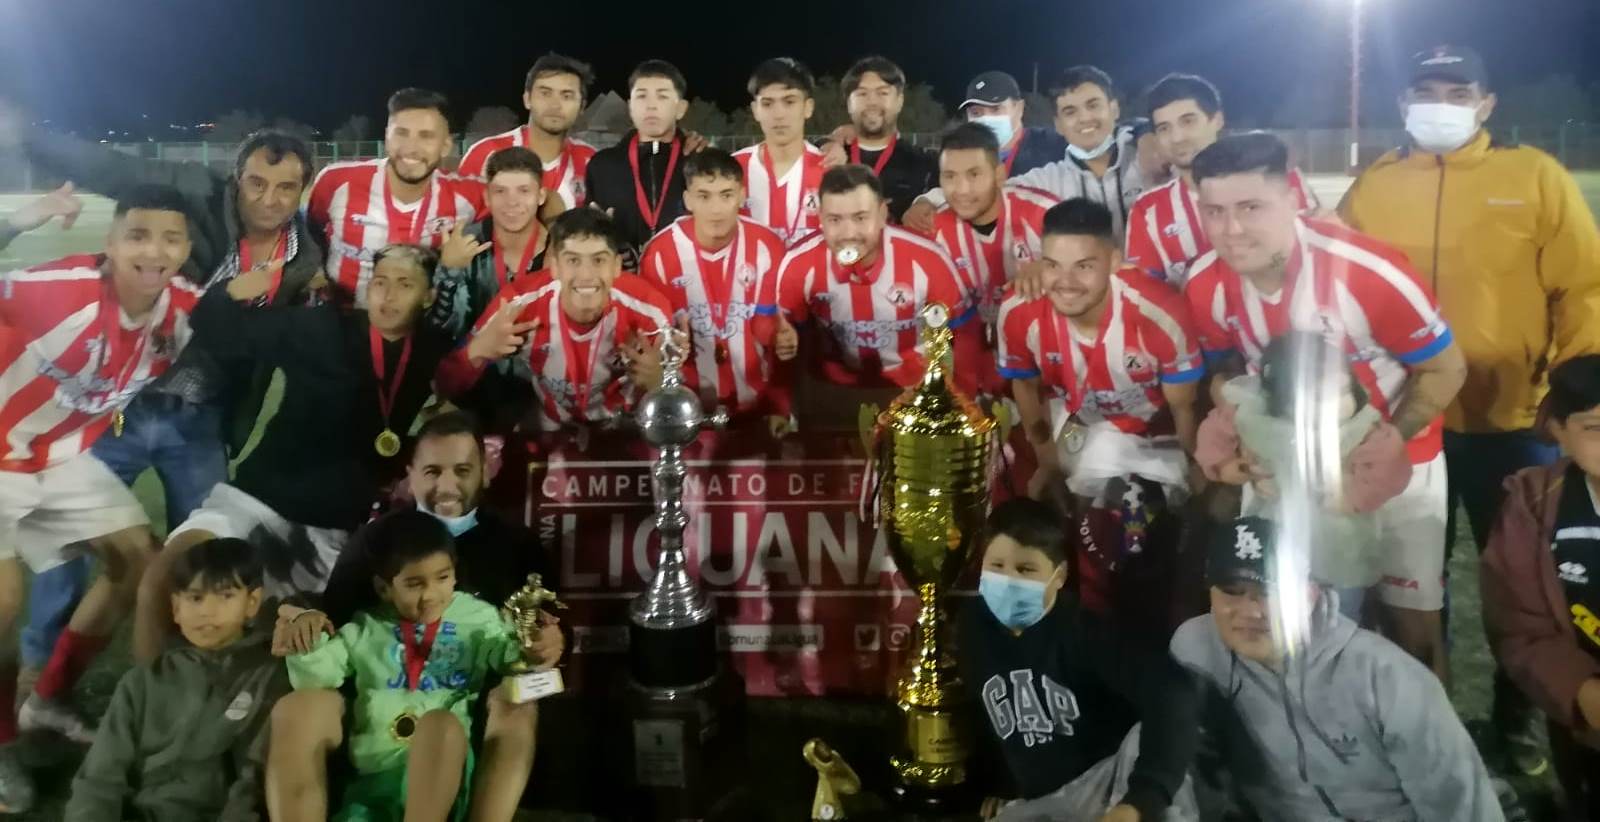 Club Deportivo “Copihues Rojos” se tituló campeón de la Semana Liguana  Masculina de Fútbol 2022 – La Ligua Noticias